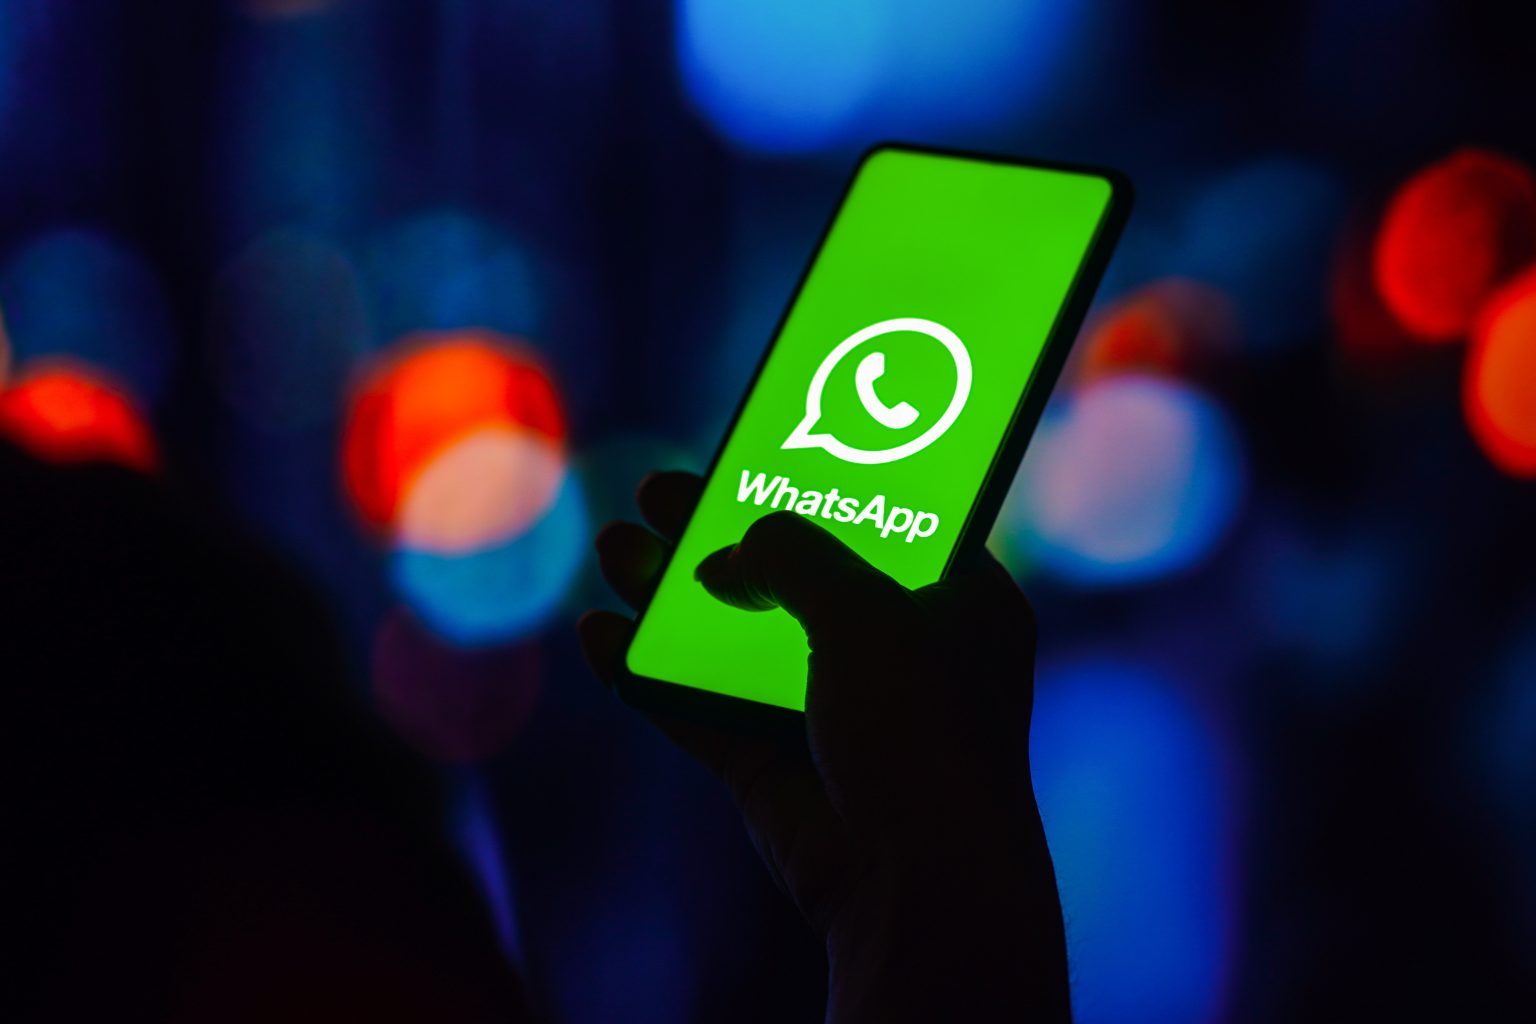 الإعلام الرقمي: مشكلة في واتساب تمنع المستخدم من إرسال الصور والرسائل الصوتية